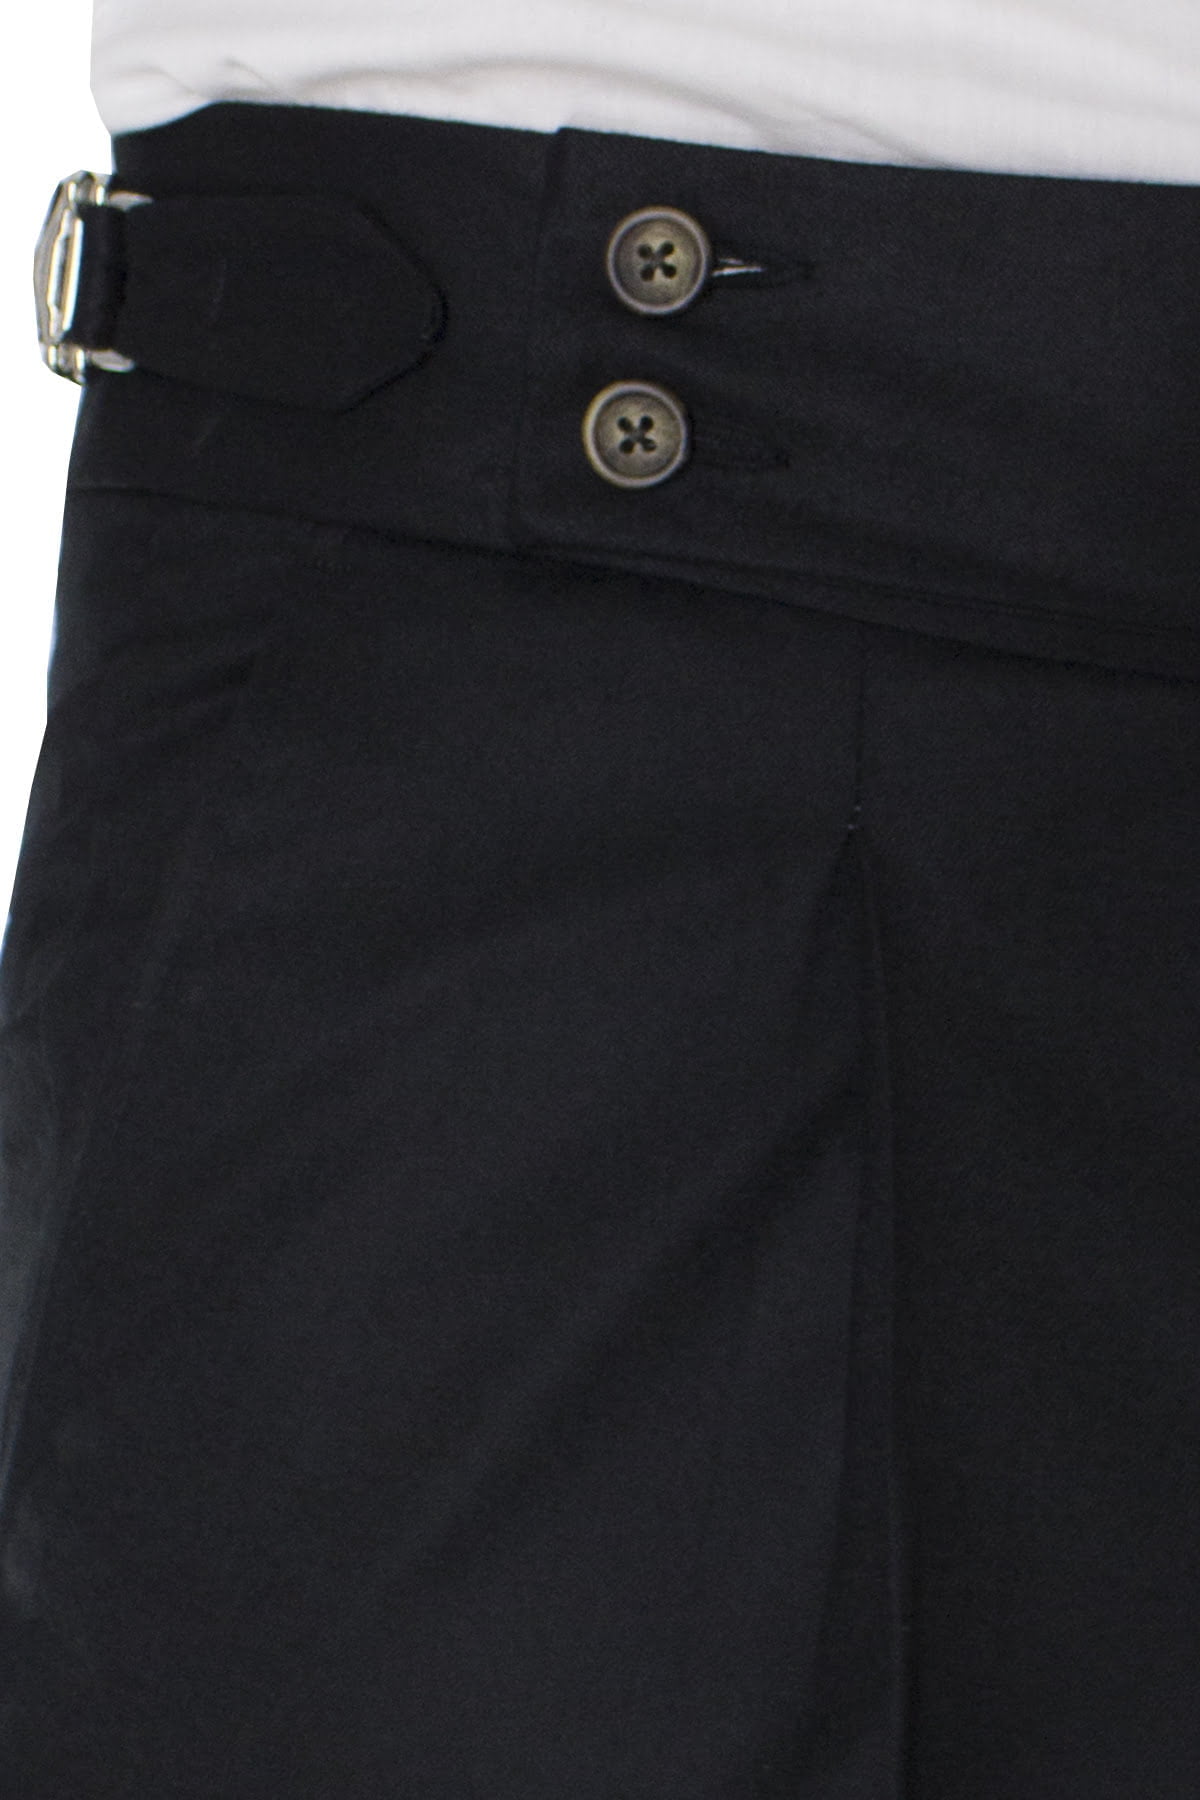 Pantalone uomo nero in lana vita alta con pinces e fibbie laterali vitale barberis canonico